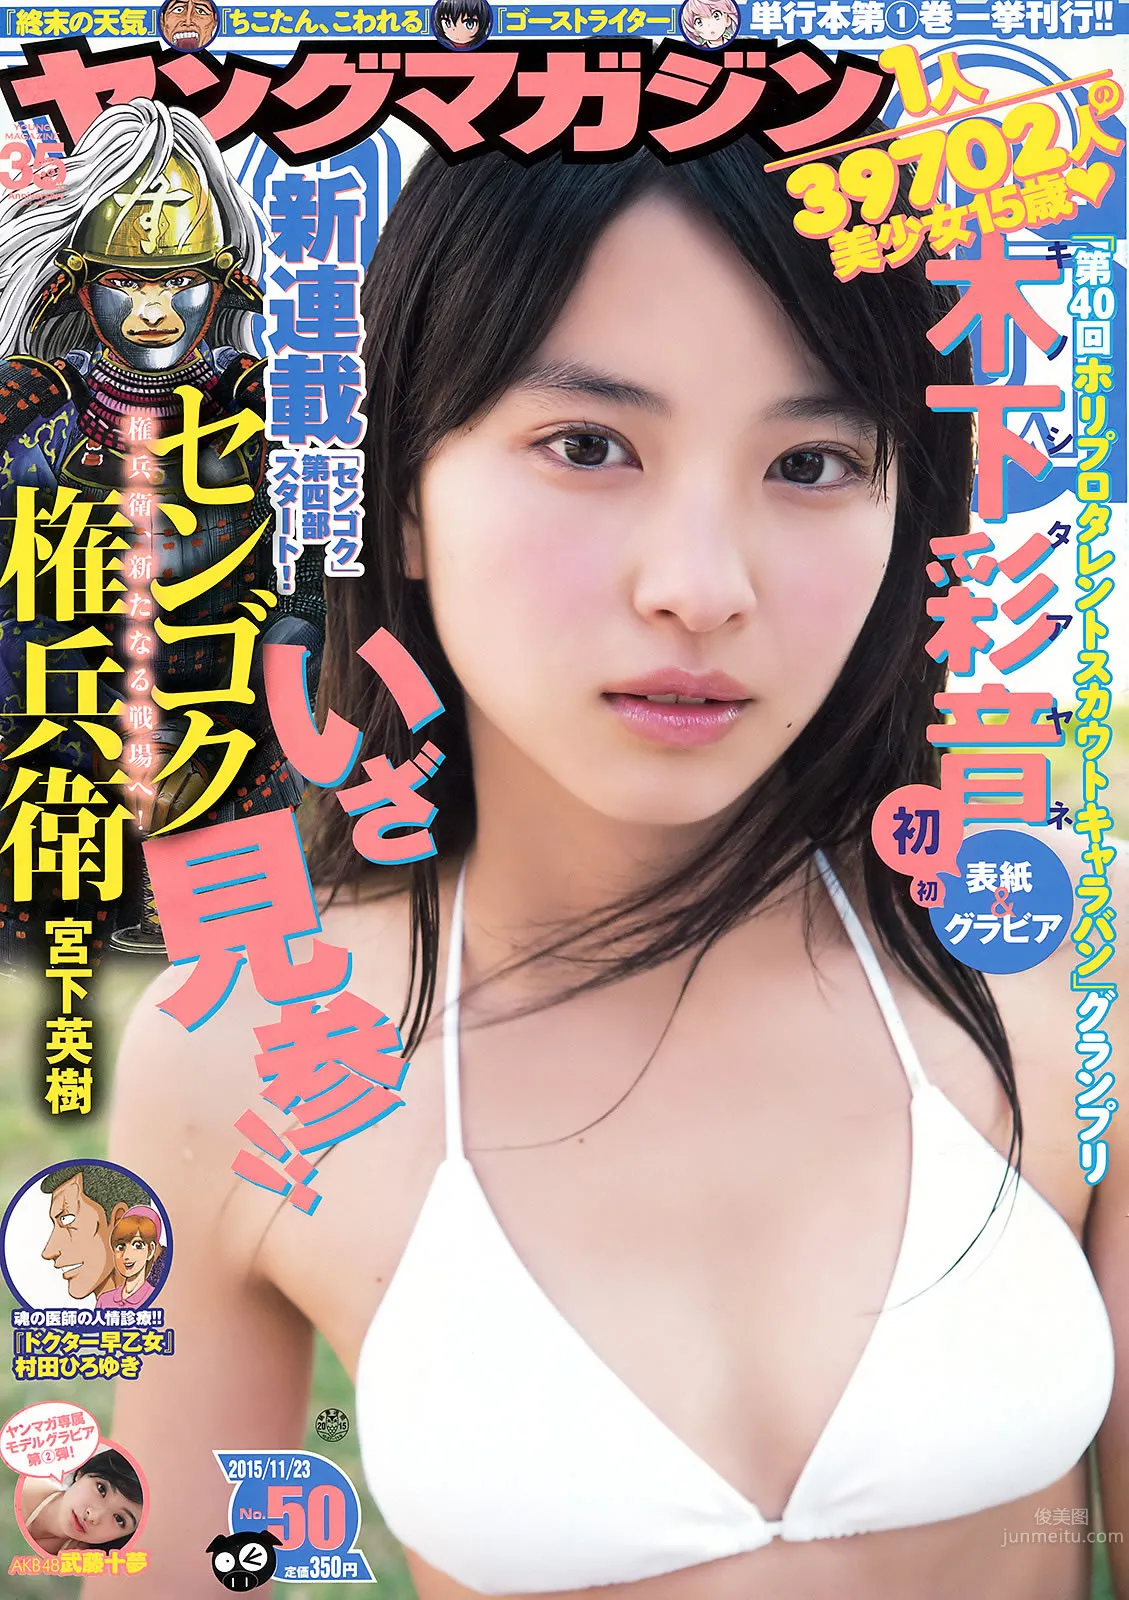 [Young Magazine] 2015 No.49-50 久松郁実 大川藍 木下彩音 武藤十夢_0